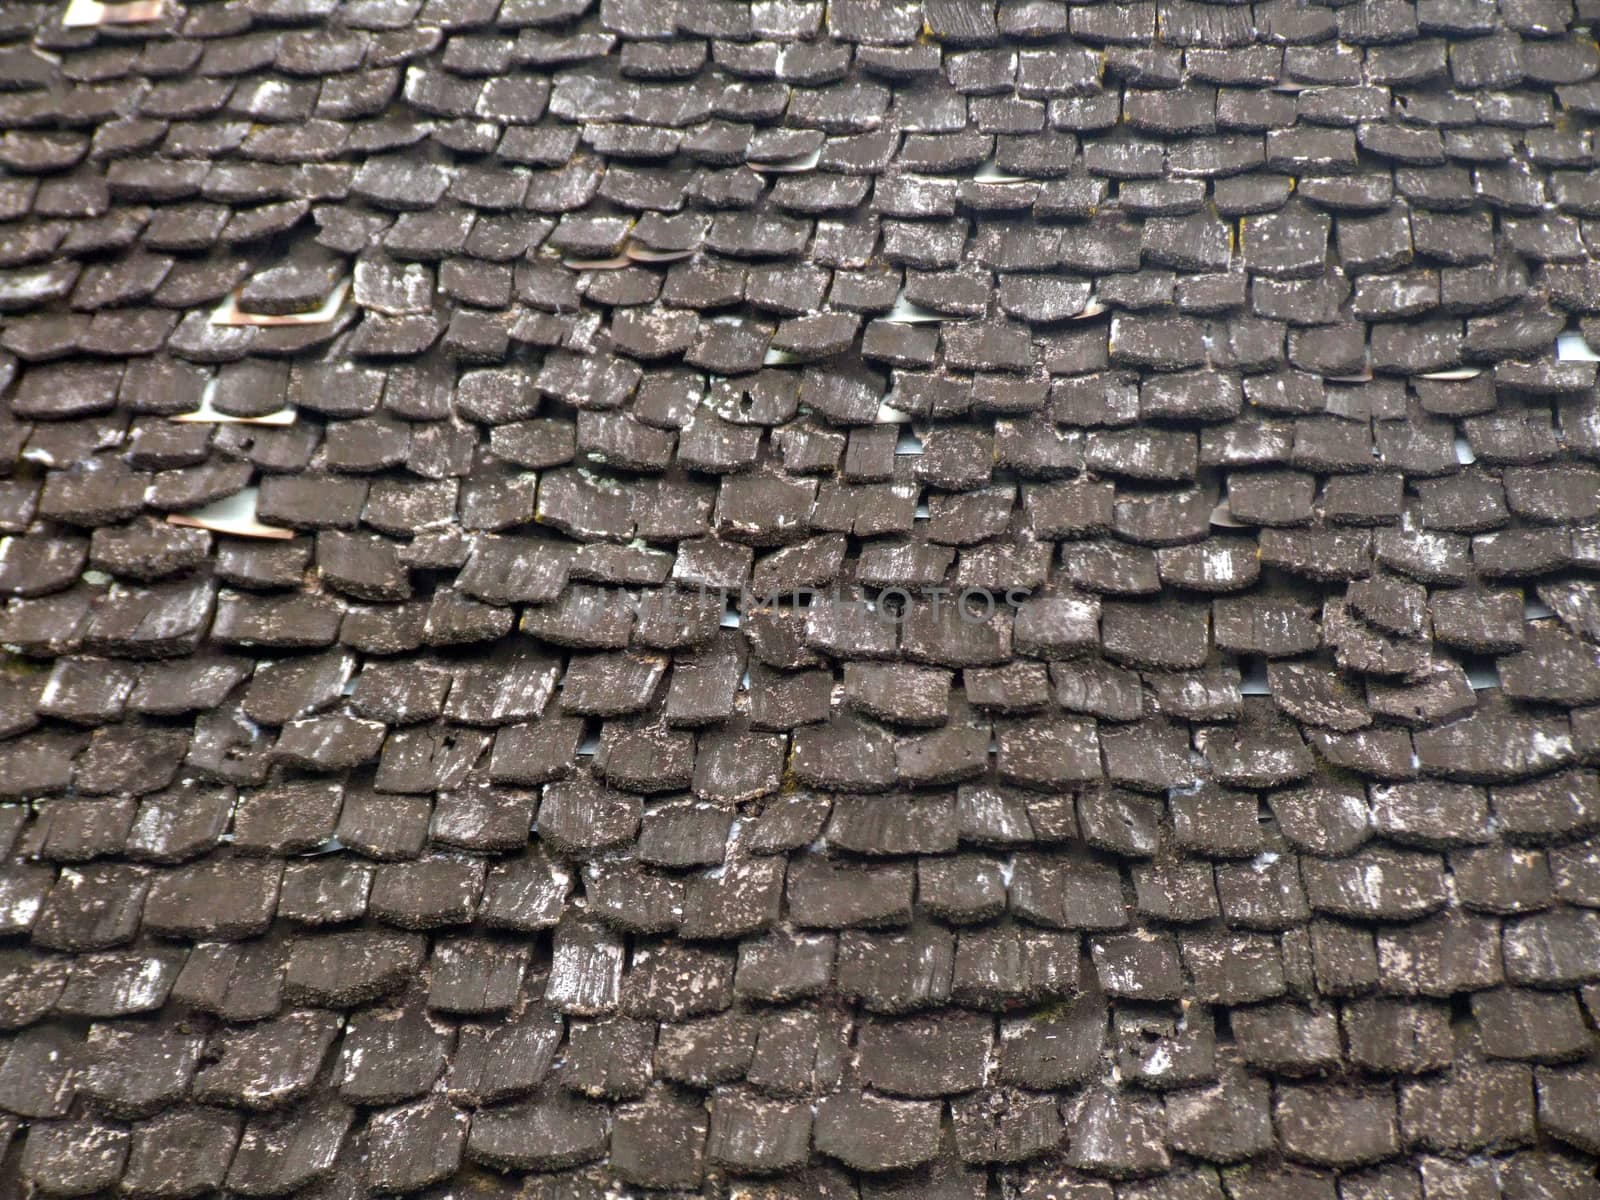 Wooden Roof Tiles